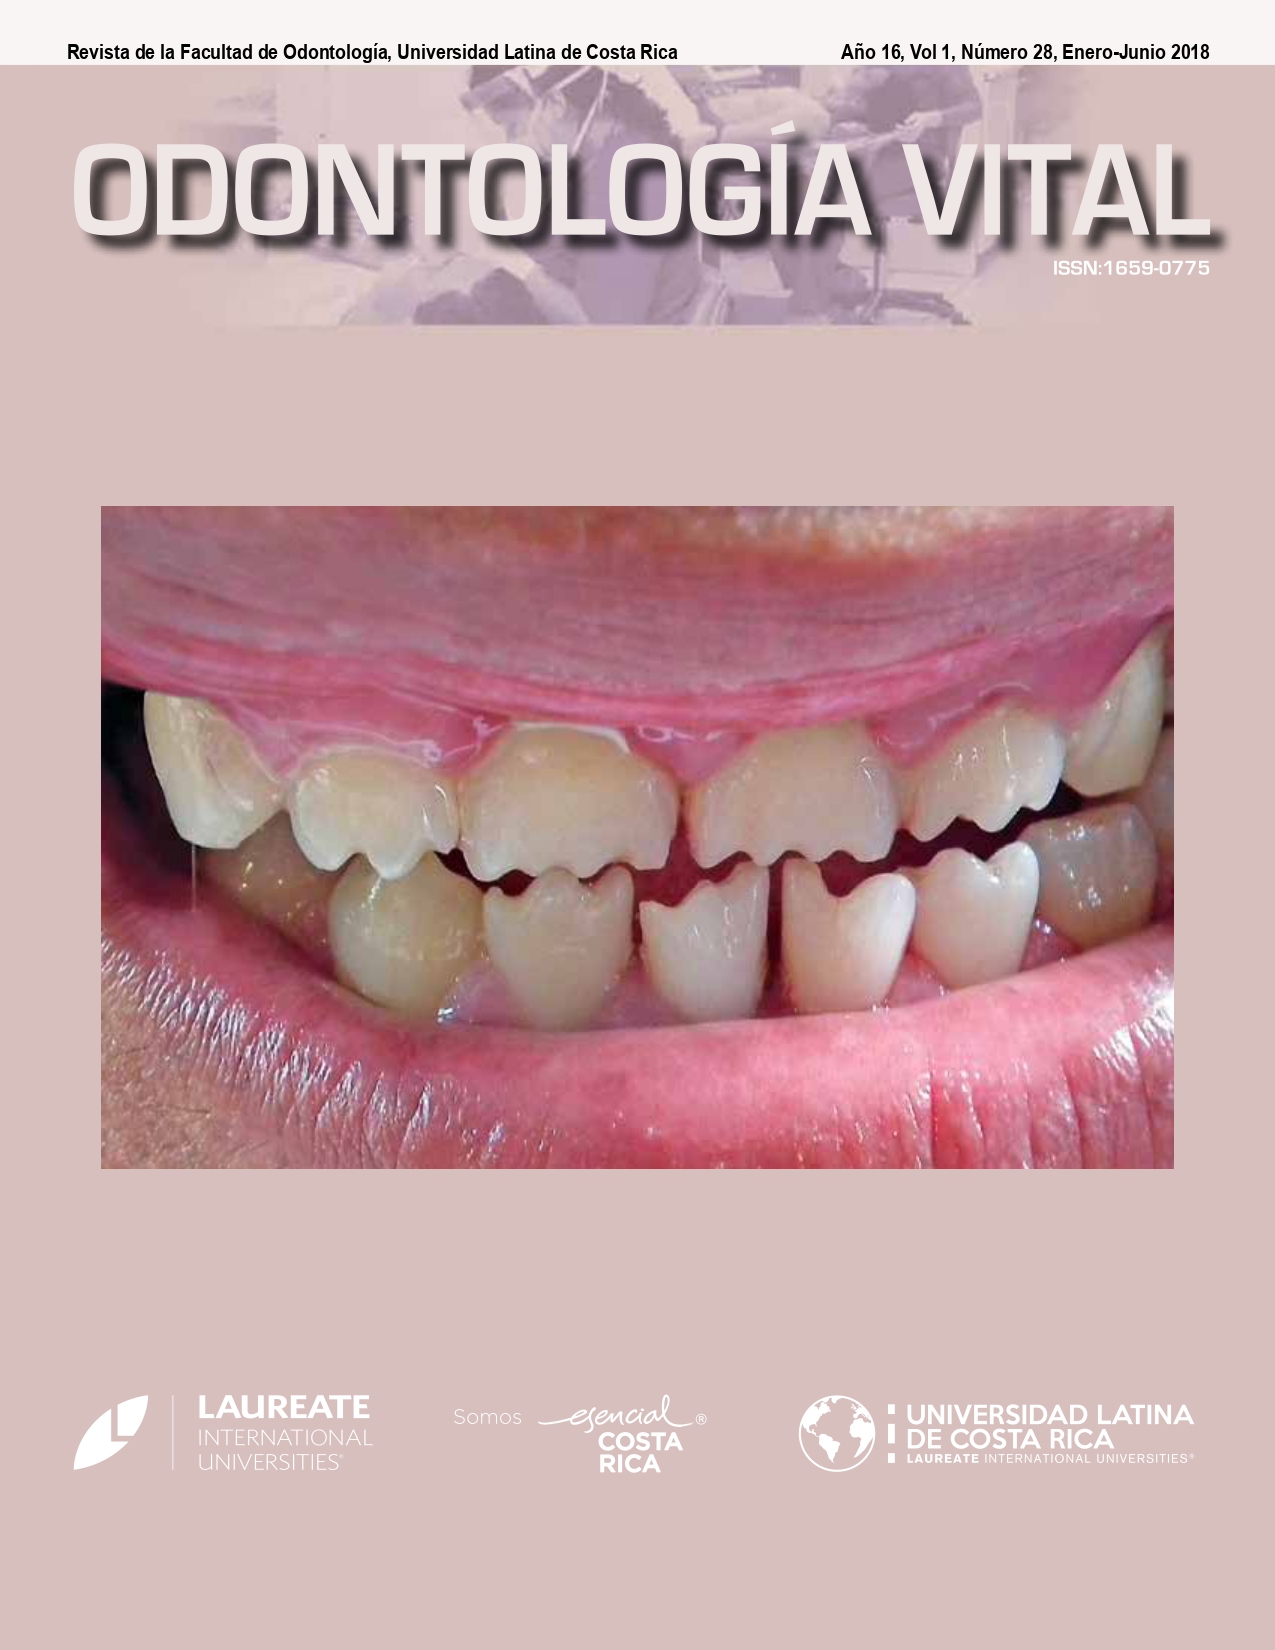 					Ver Vol. 1 Núm. 28 (16): Odontología Vital, Núm 28, Enero - Junio 2018.
				